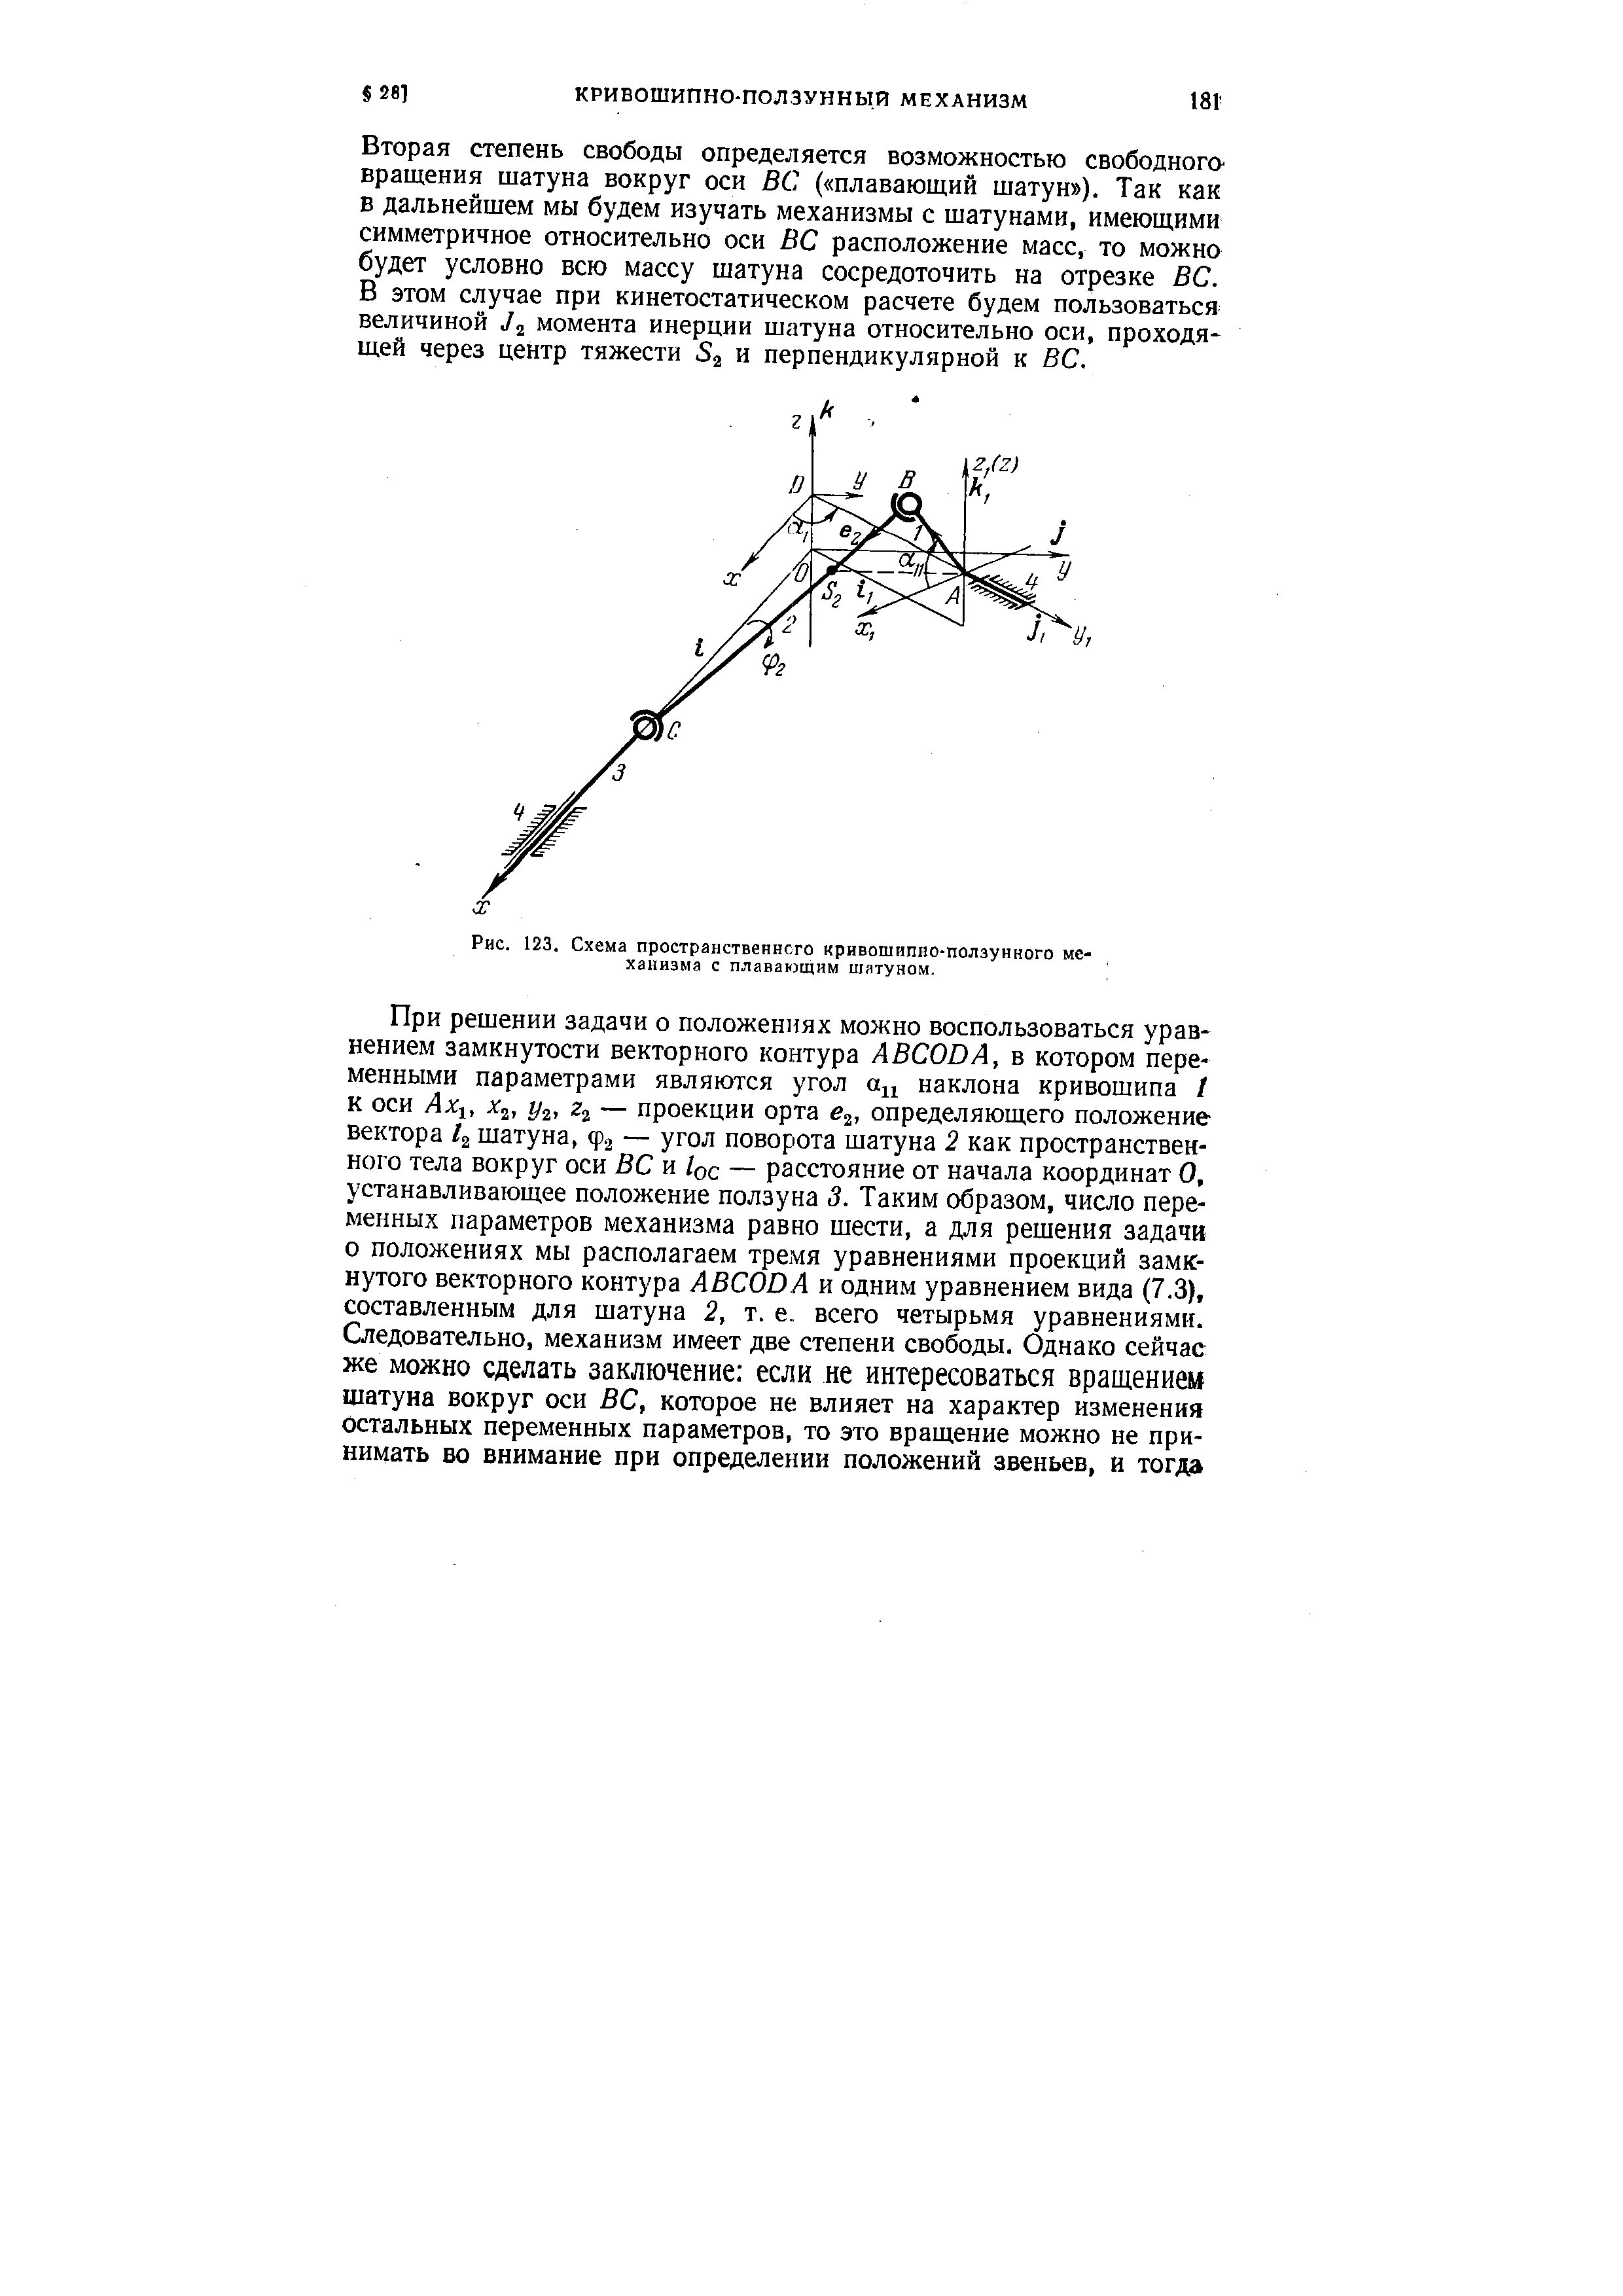 Рис. 123. Схема пространственнсго <a href="/info/1926">кривошипно-ползунного механизма</a> с плавающим шатуном.
